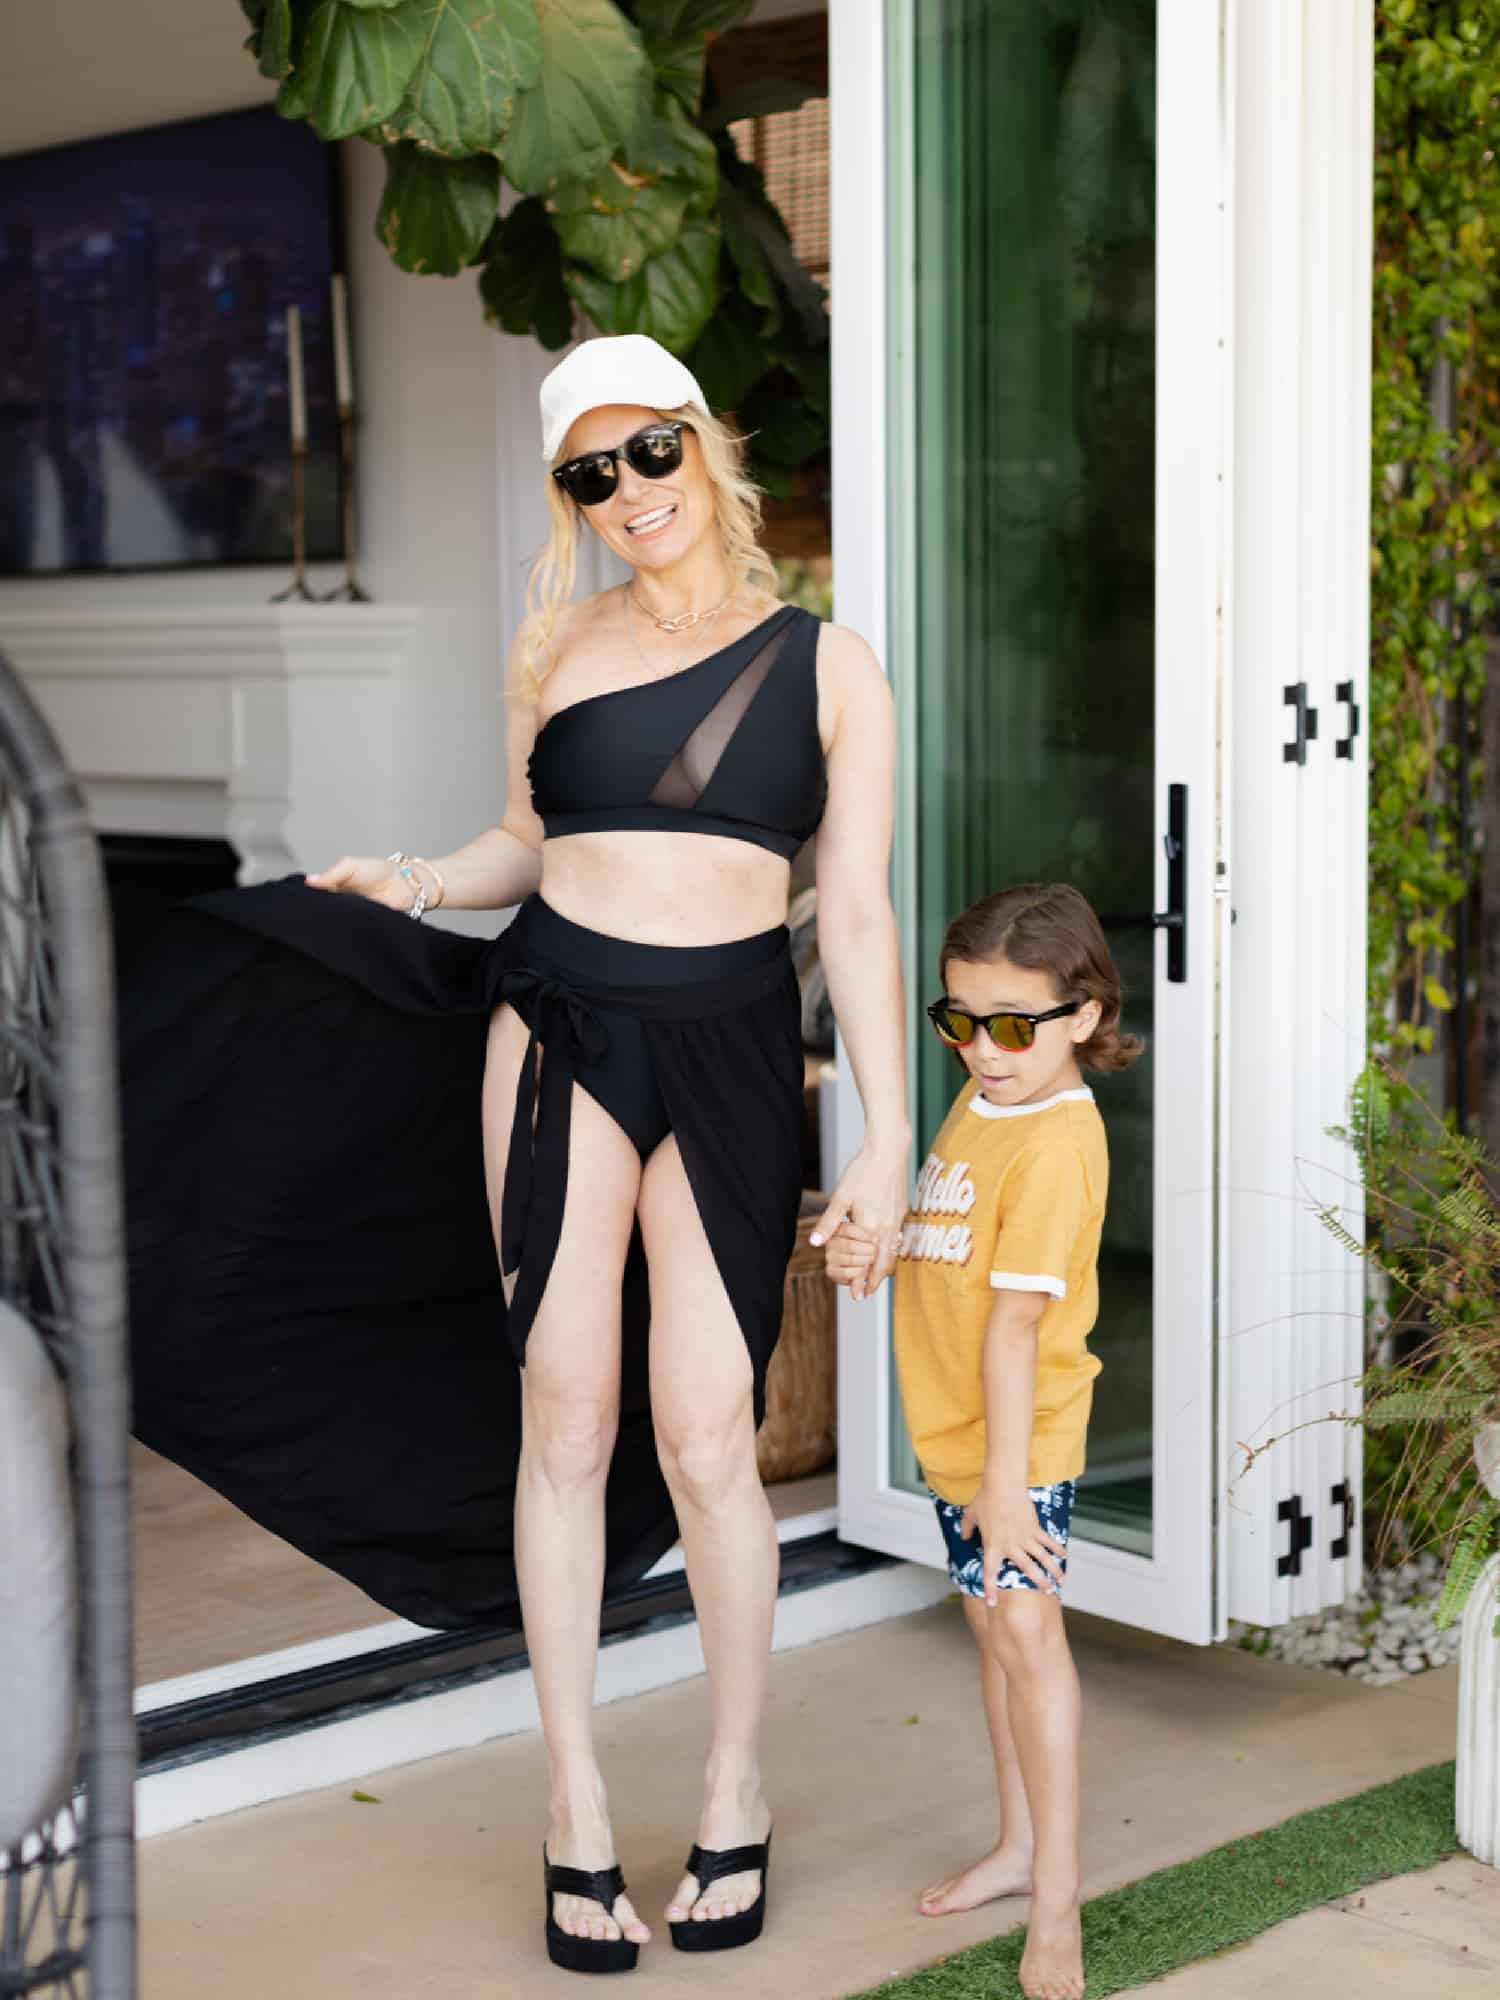 Kohl's Summer Styles: Flattering Swimsuits for Moms - City Girl Gone Mom